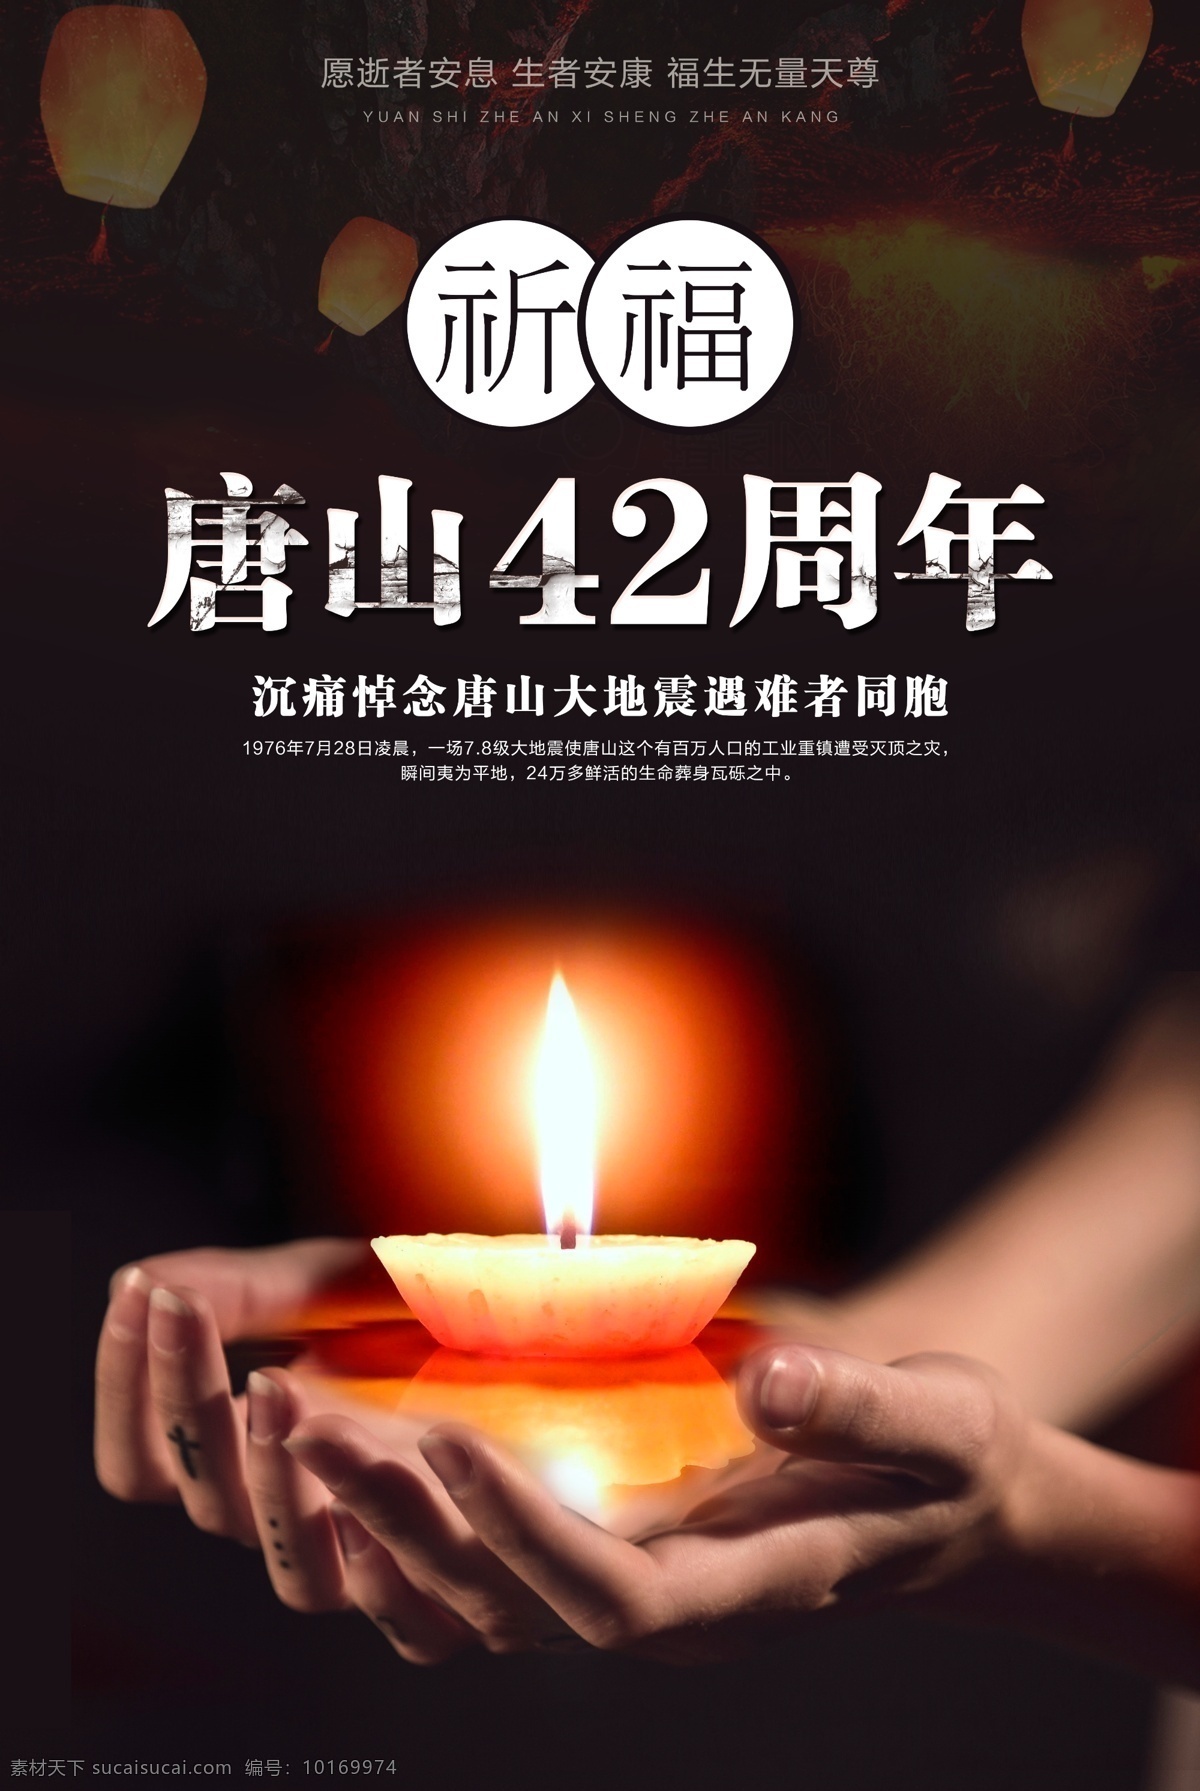 祈福 唐山 同胞 海报 唐山大地震 纪念日 安康 42周年 纪念 安息 众志成城